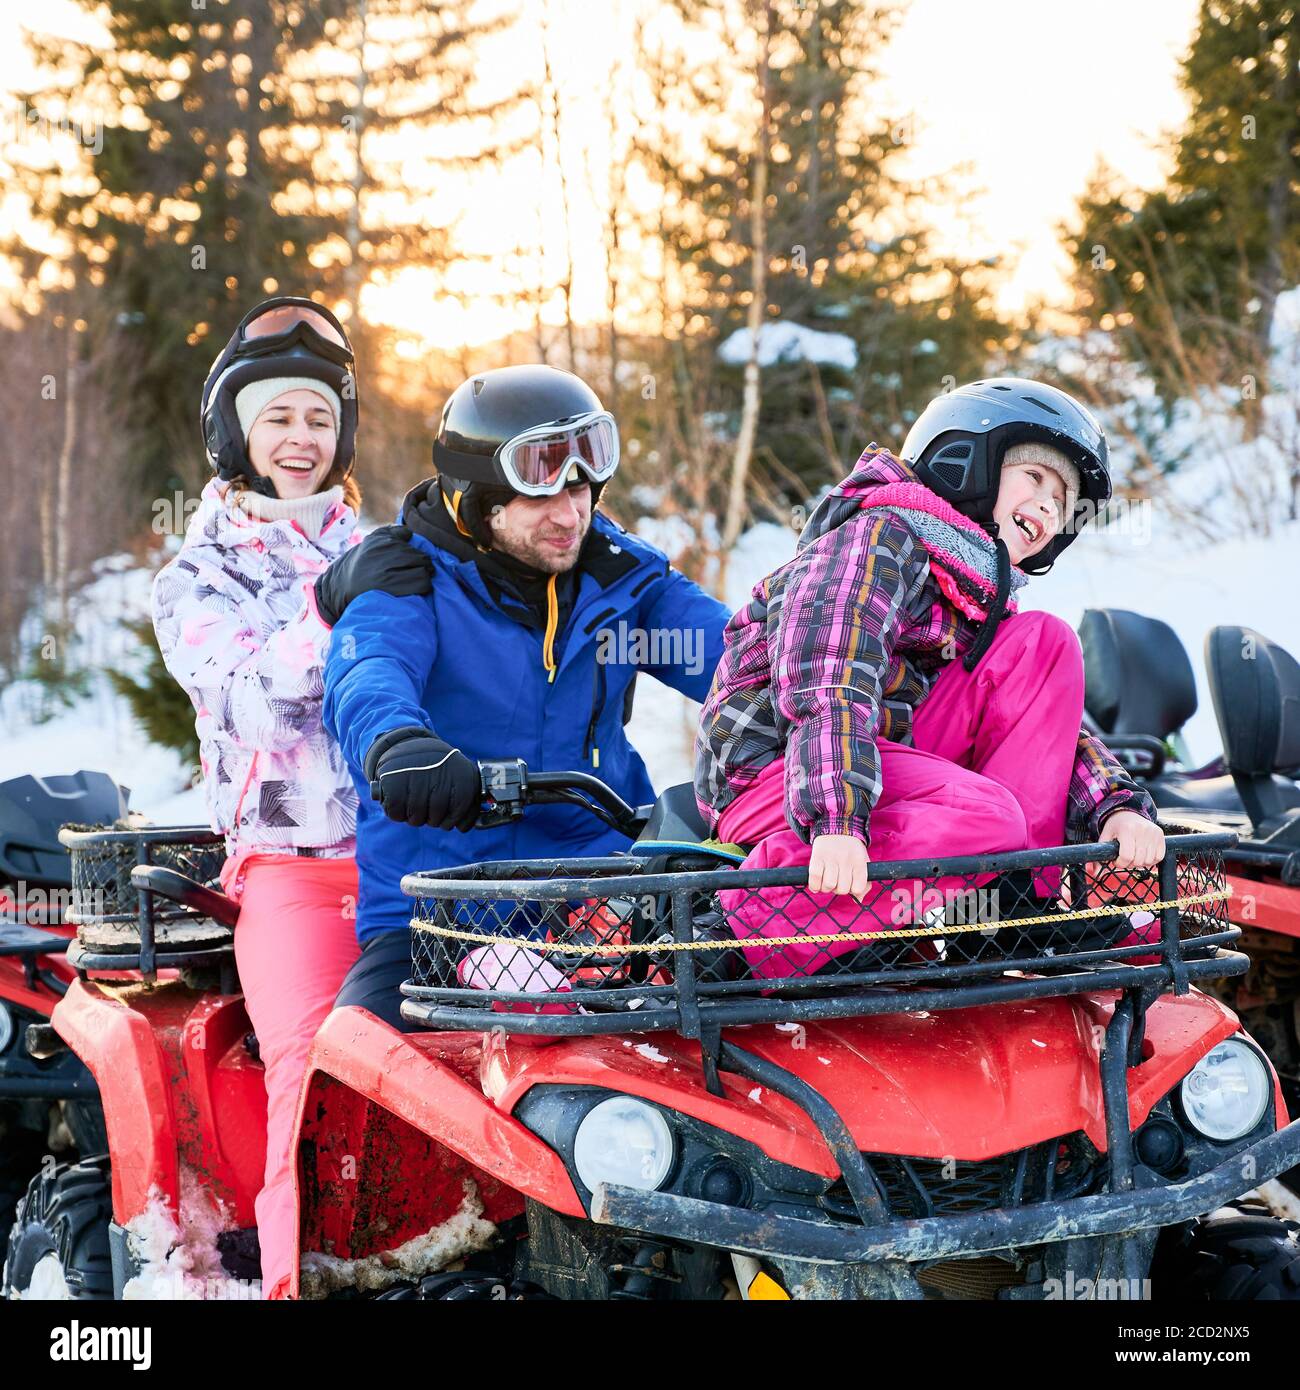 Porträt einer glücklichen Familie von drei, tragen bunte Skianzüge, verbringen aktiven Winterurlaub, lachen zusammen in verschneiten Bergen auf roten Quad-Bike. Konzept der Familienbeziehungen Stockfoto